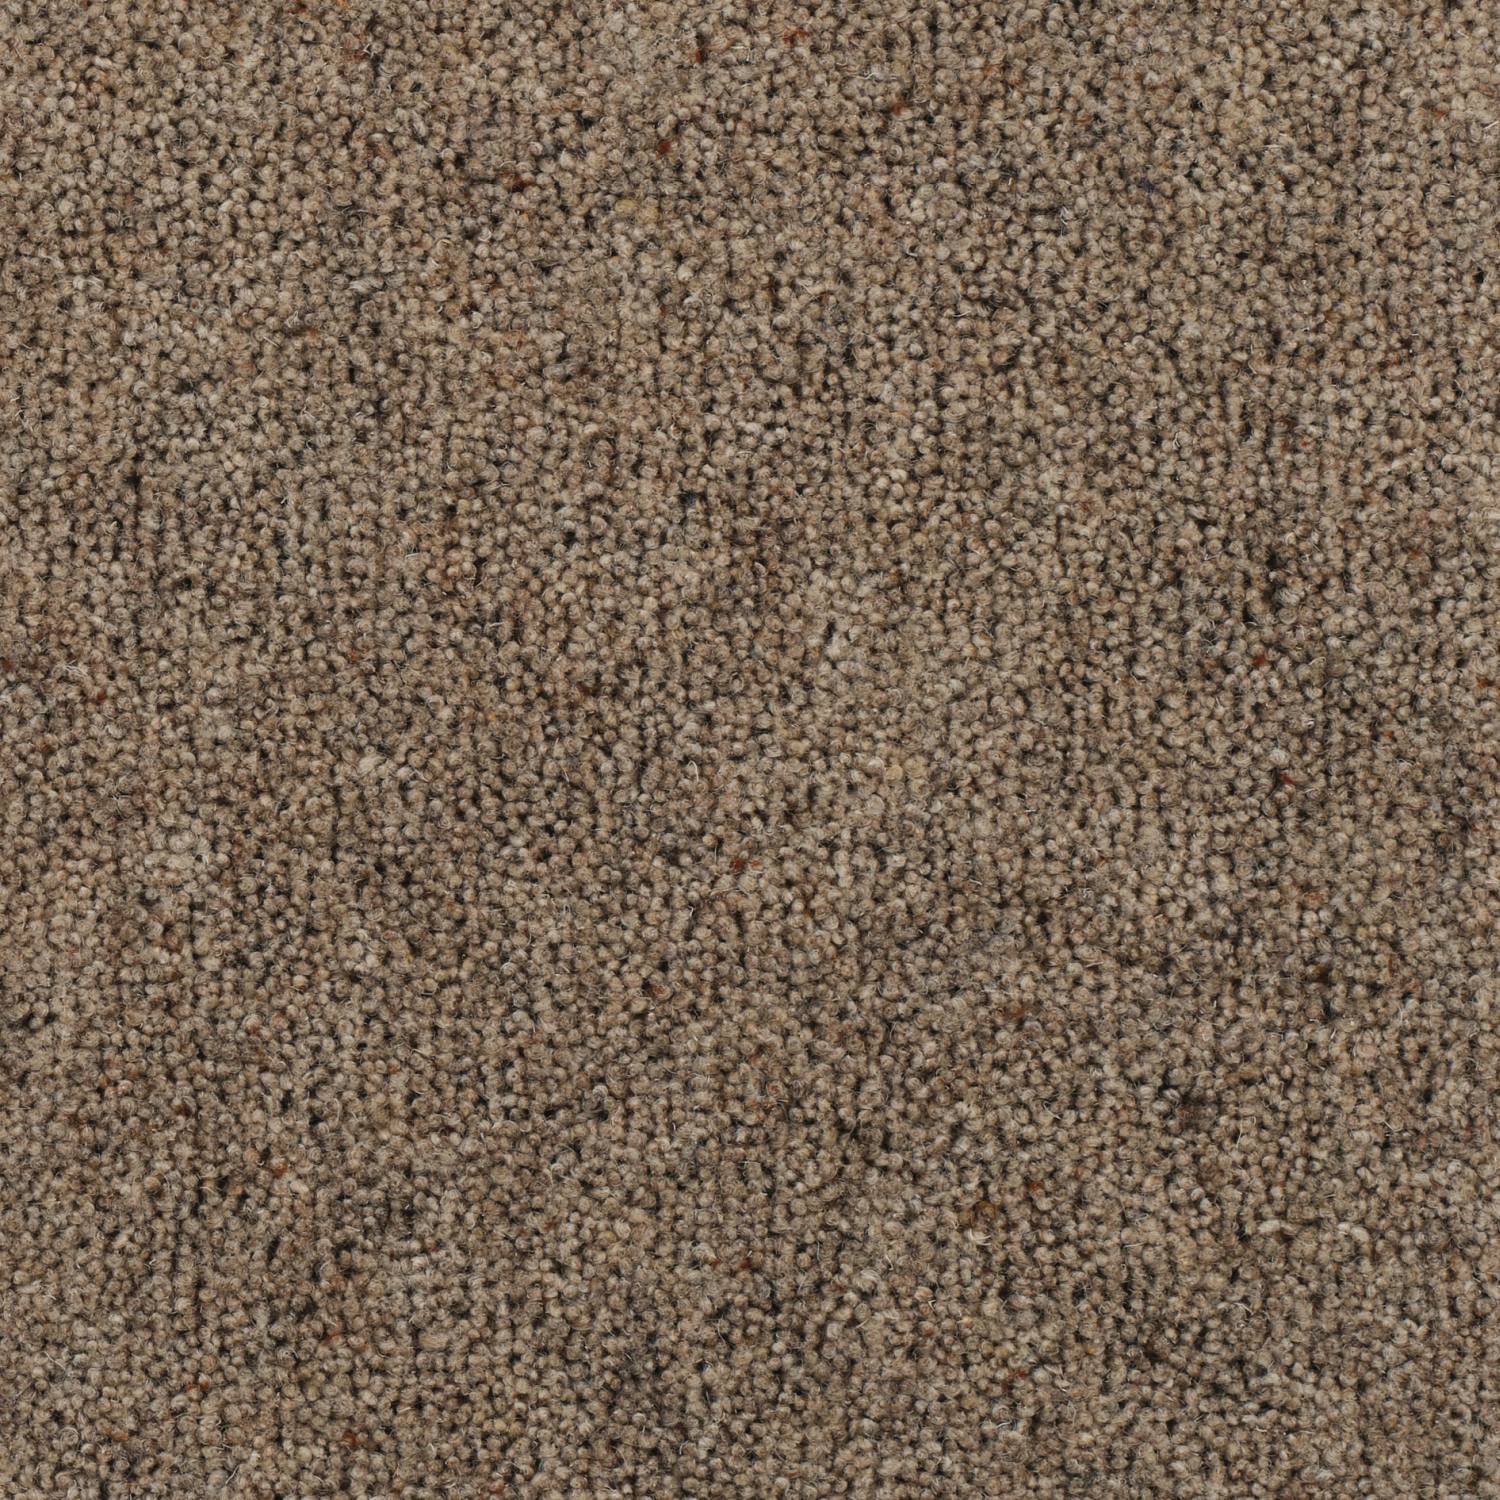 Riverside Origins Wool Carpet - Avon